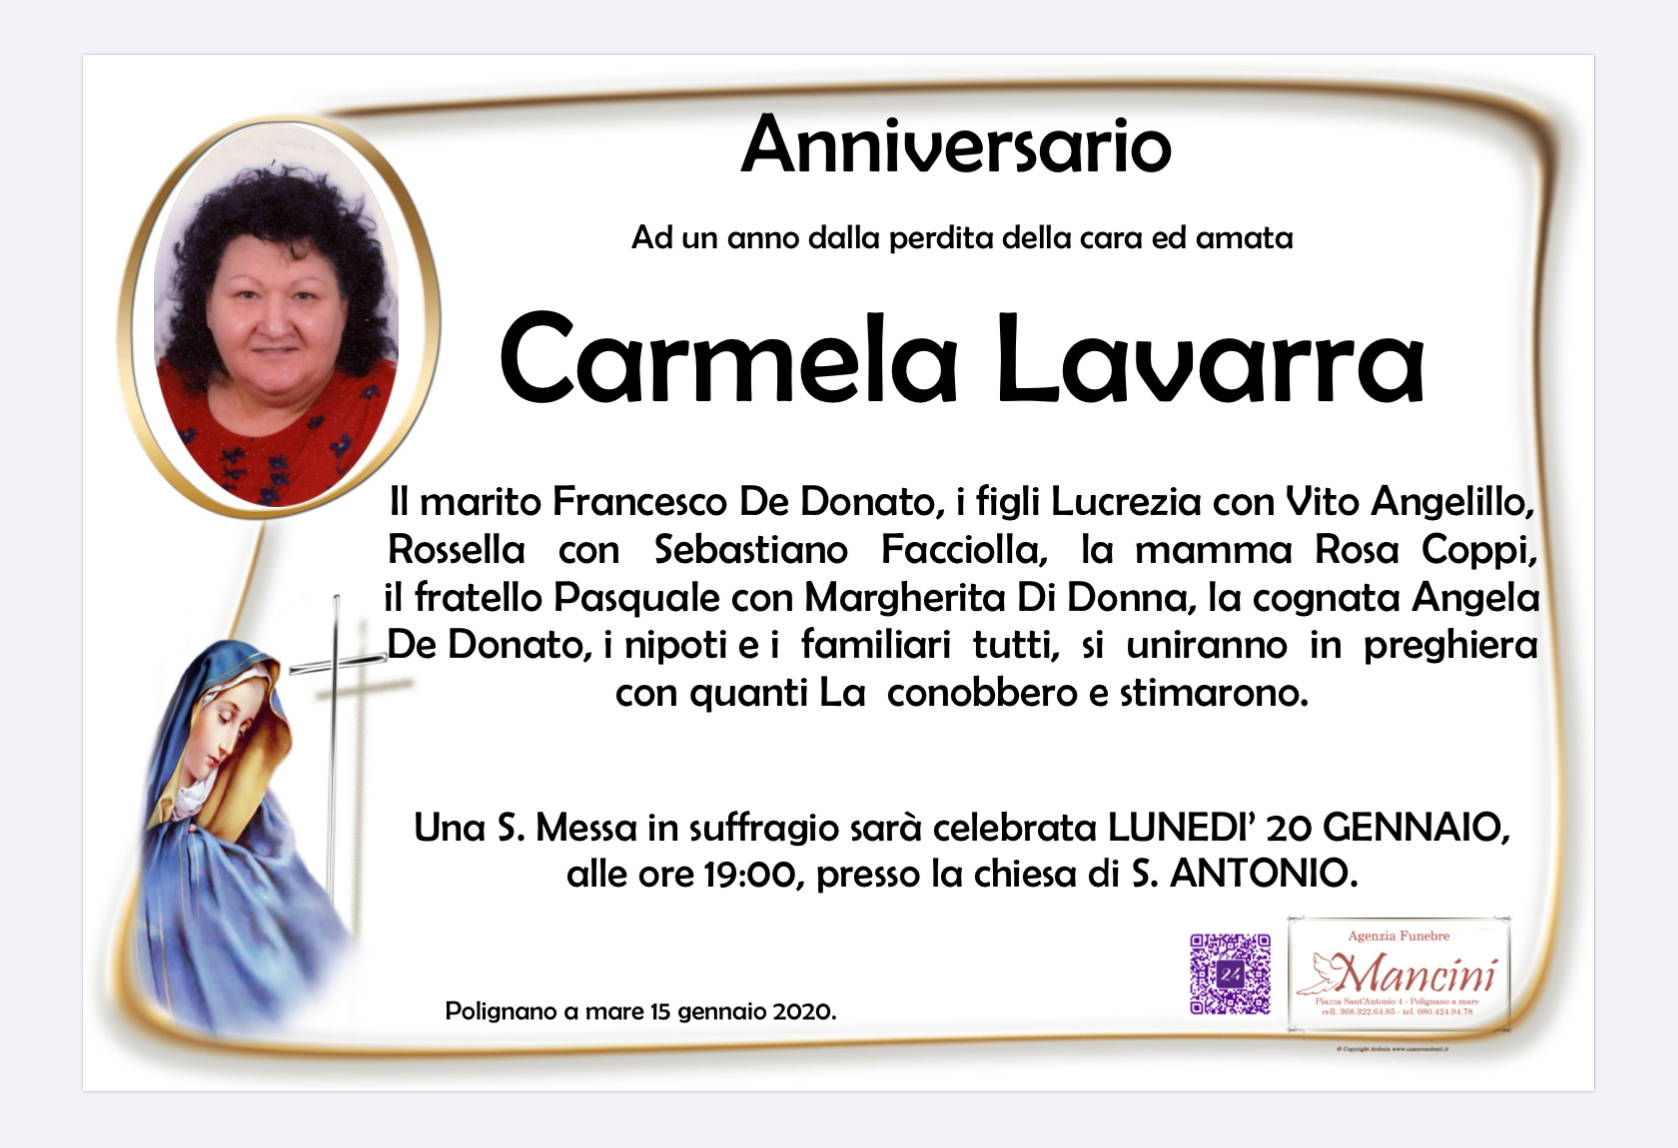 Carmela Lavarra